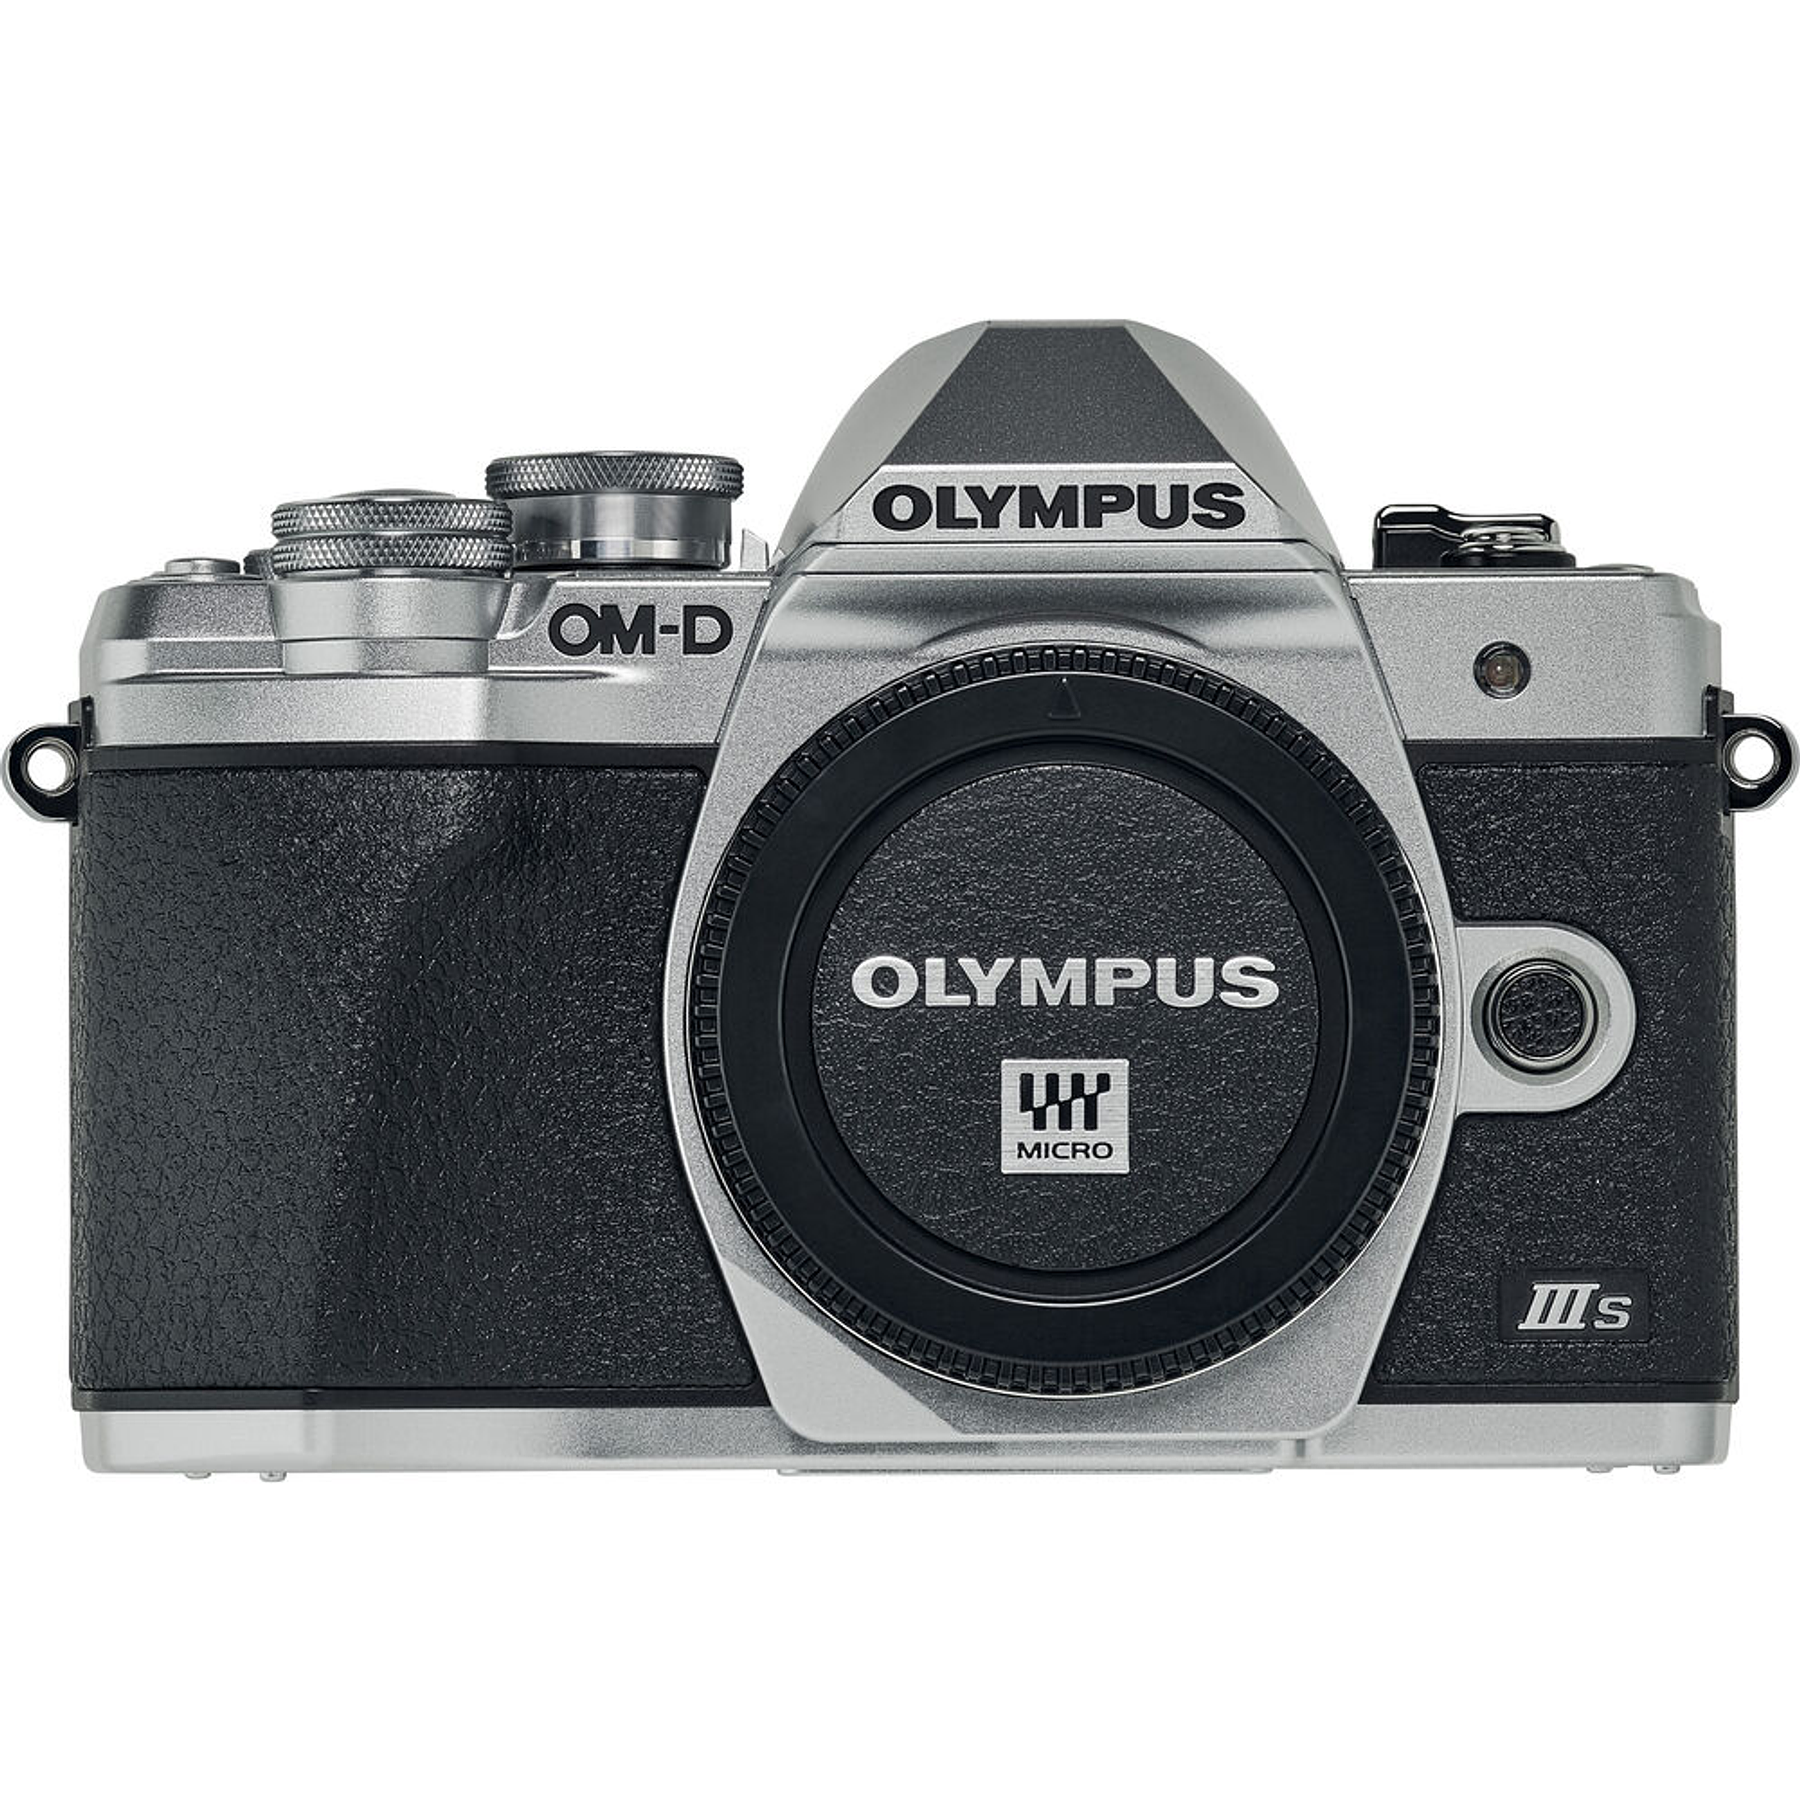 Cámara sin espejo Olympus OM-D E-M10 Mark III con lente de 14-42 mm II R (plateado)